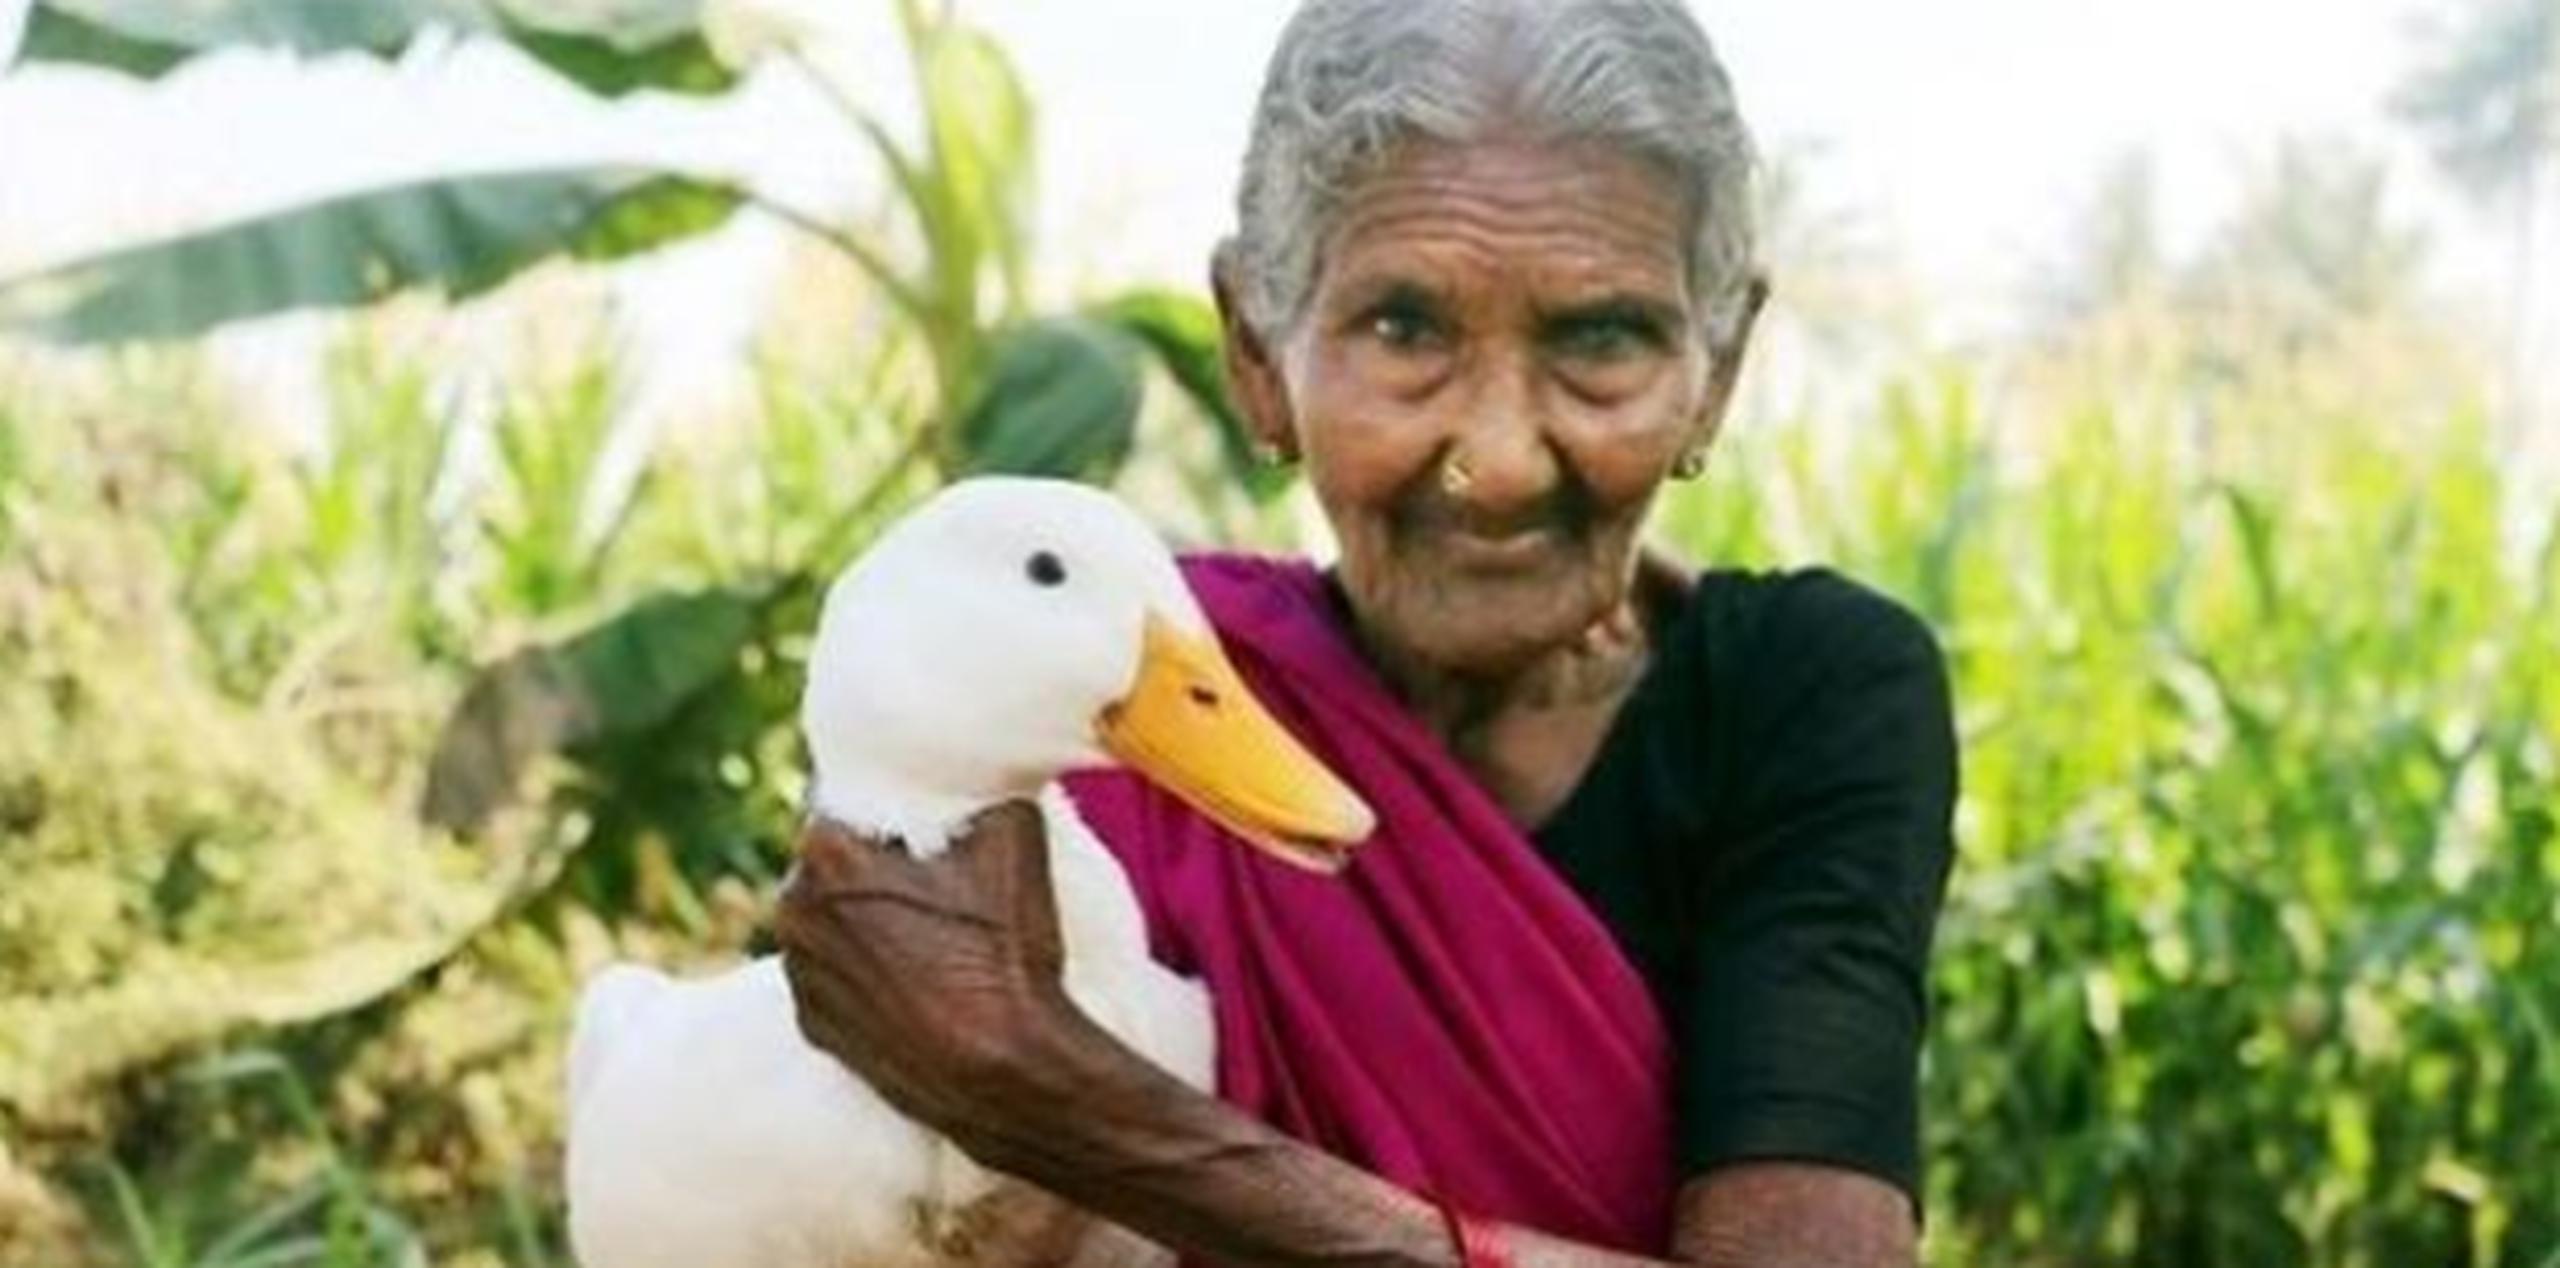 Mastanamma tiene 106 años y es una experimentada cocinera  que comparte su talento en YouTube gracias a su nieto Laxman K. Él filma y edita los vídeos que luego salen en "Country Foods", su canal. (Captura / YouTube)